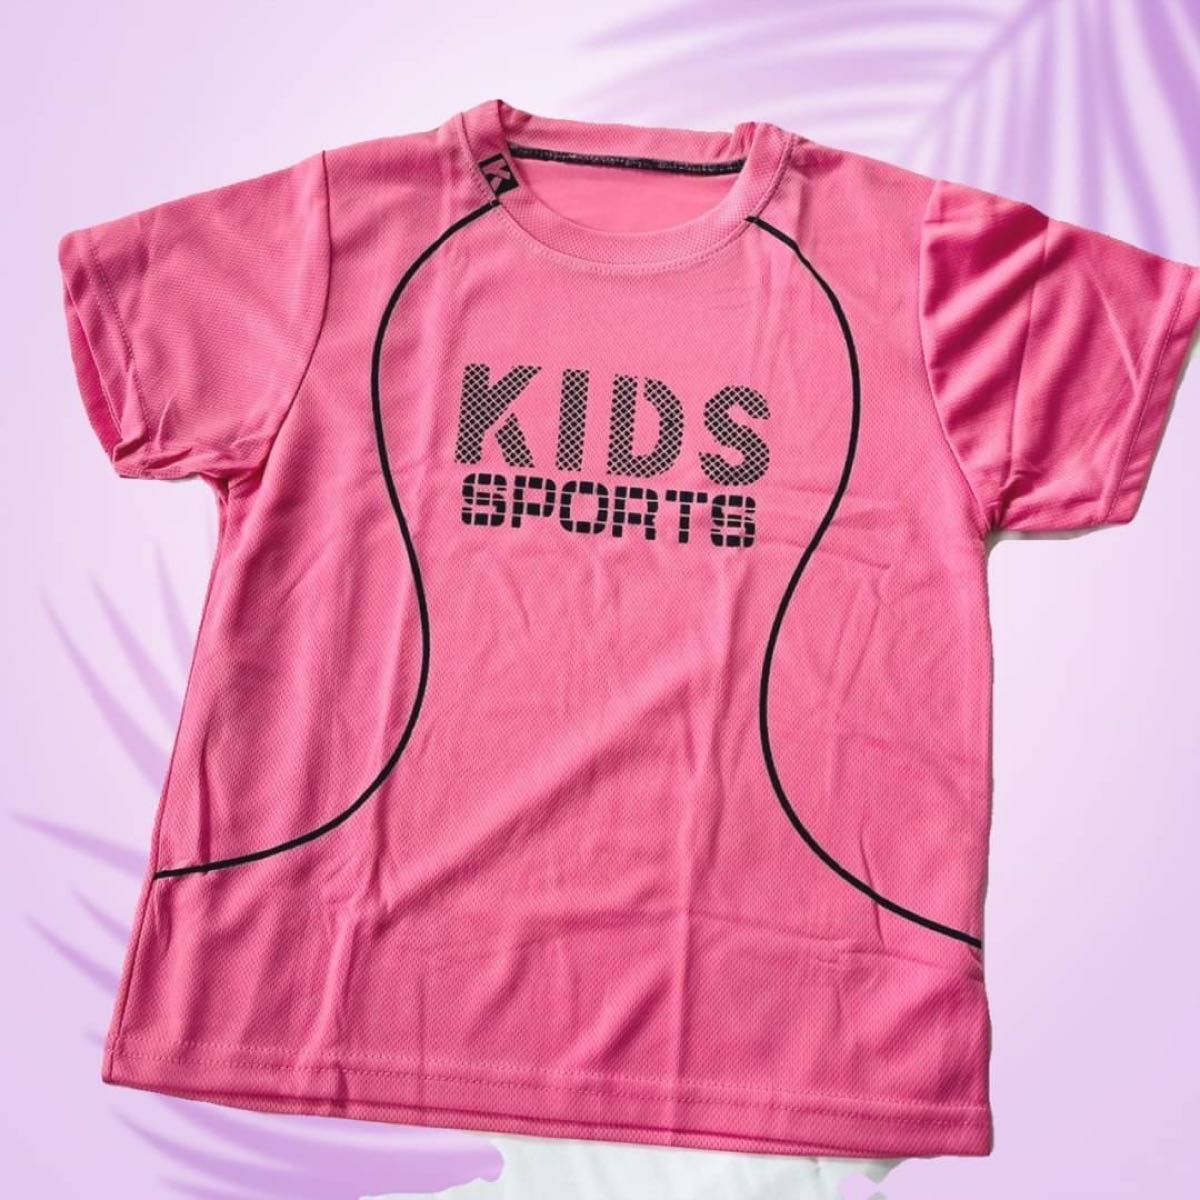 セットアップ スポーツ ユニフォーム キッズ 子ども パジャマ 部屋着 運動着 ピンク150cm 新品未使用